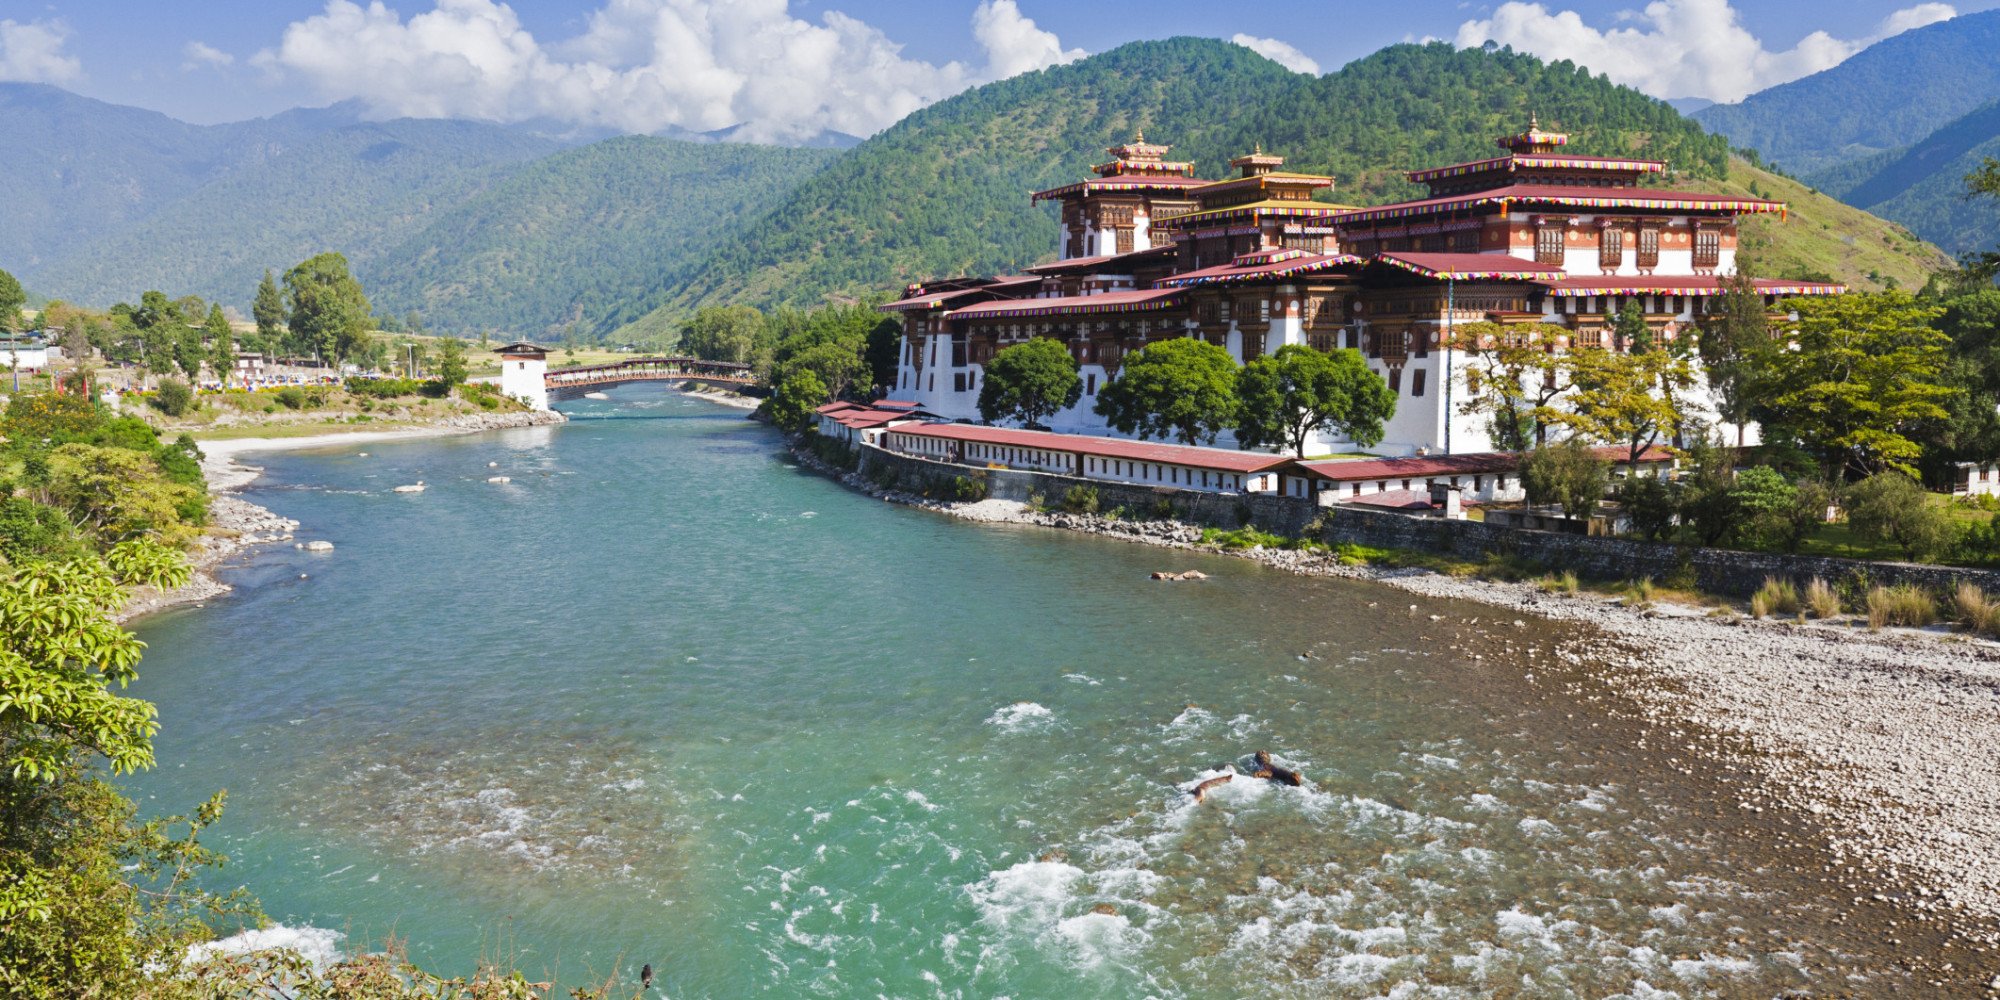 Dịch vụ làm visa Bhutan, lấy visa Bhutan nhanh, không chờ đợi